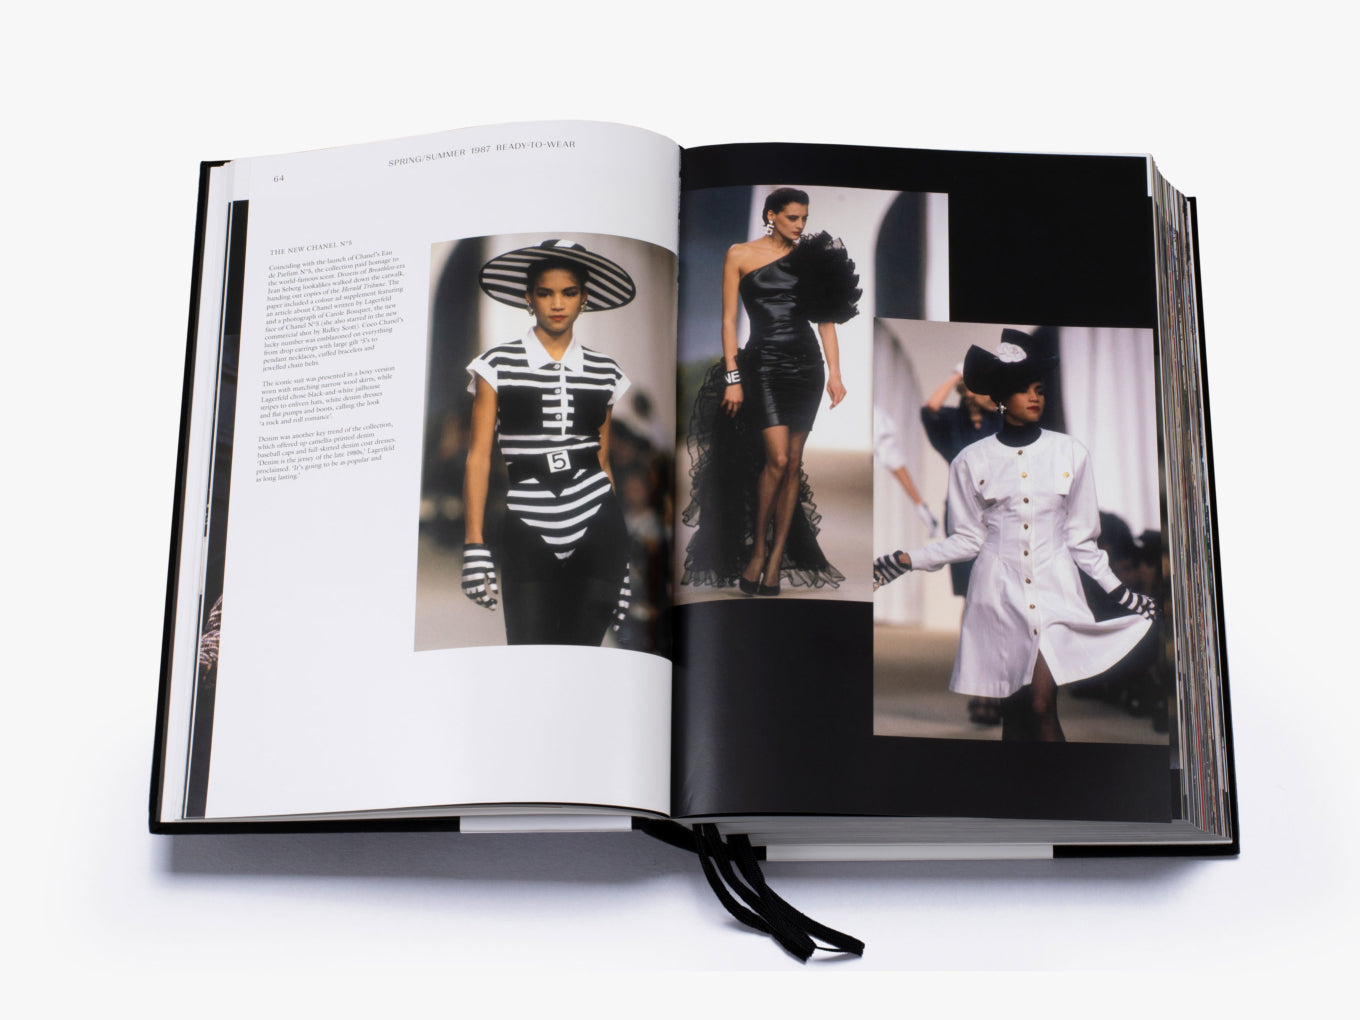 VMAGAZINE Debuts 'The Chanel Book' - V Magazine